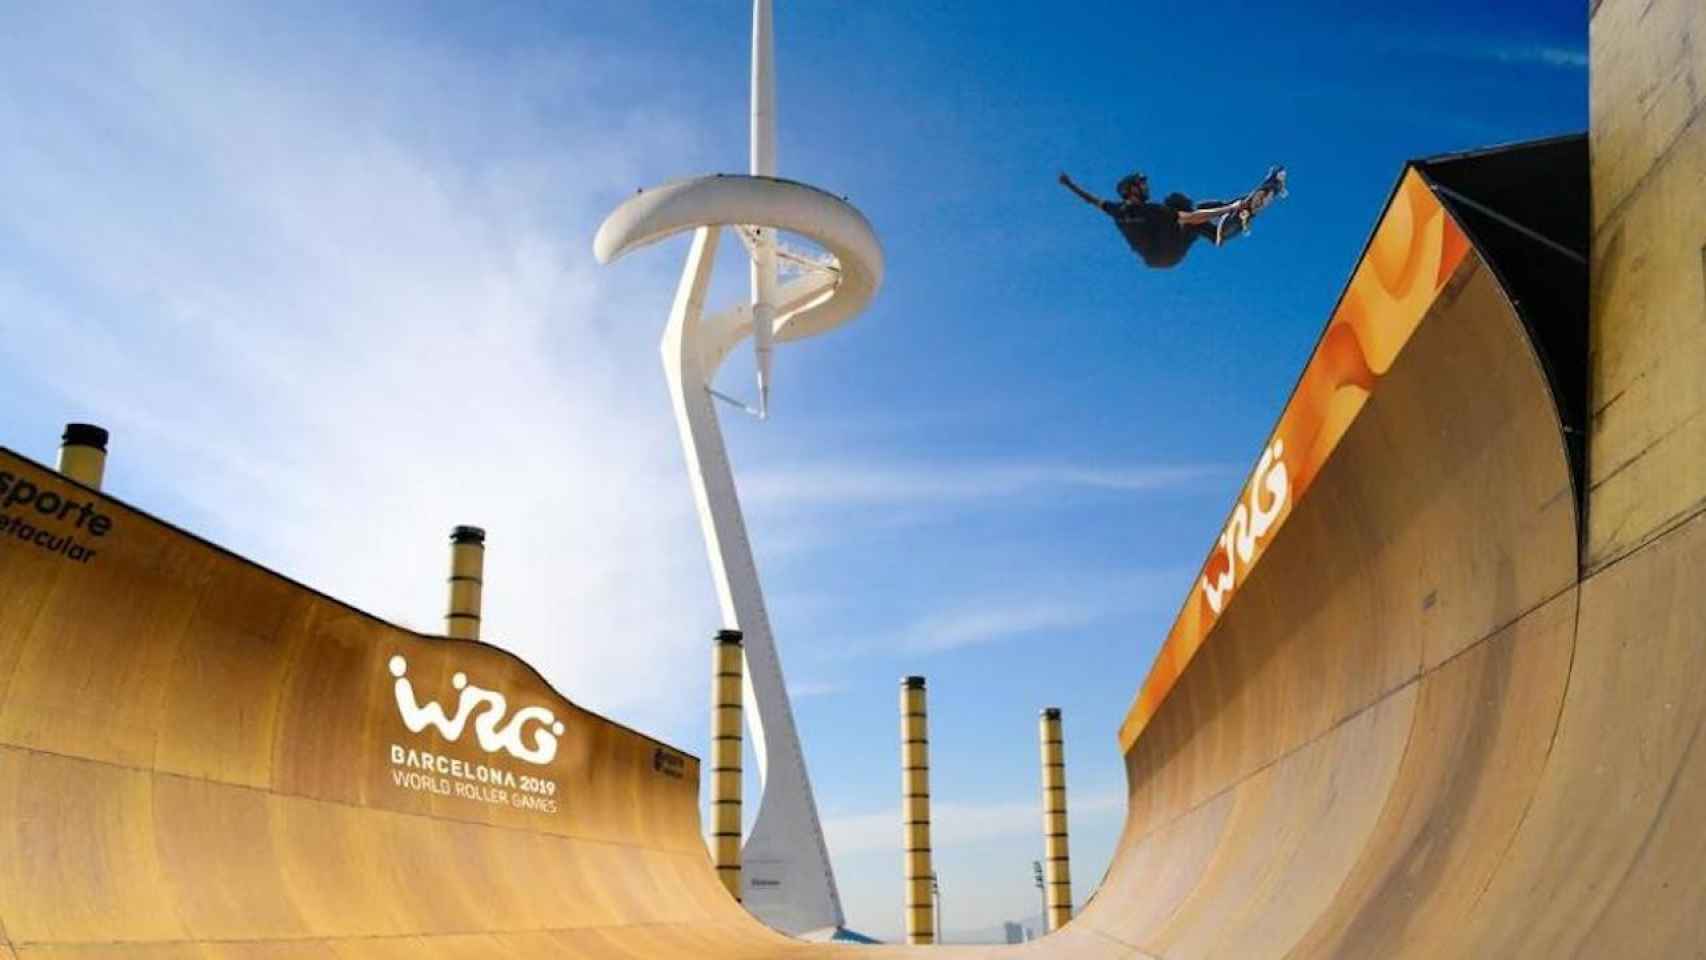 Un patinador realiza una pirueta en una imagen promocional de los World Roller Games / WORLD ROLLER GAMES